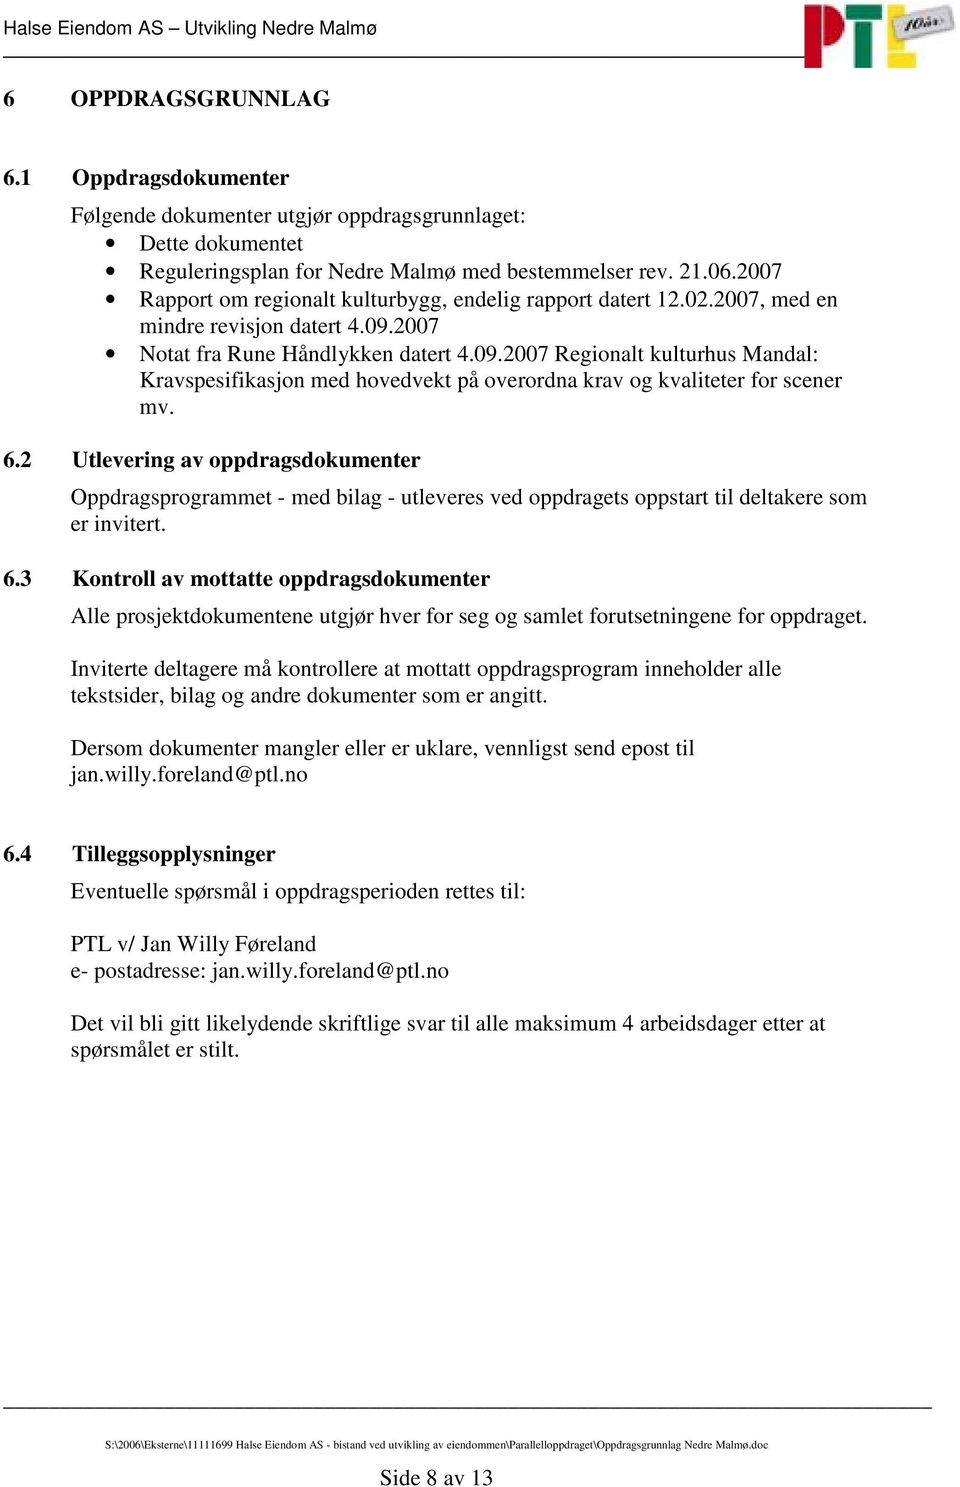 2007 Notat fra Rune Håndlykken datert 4.09.2007 Regionalt kulturhus Mandal: Kravspesifikasjon med hovedvekt på overordna krav og kvaliteter for scener mv. 6.